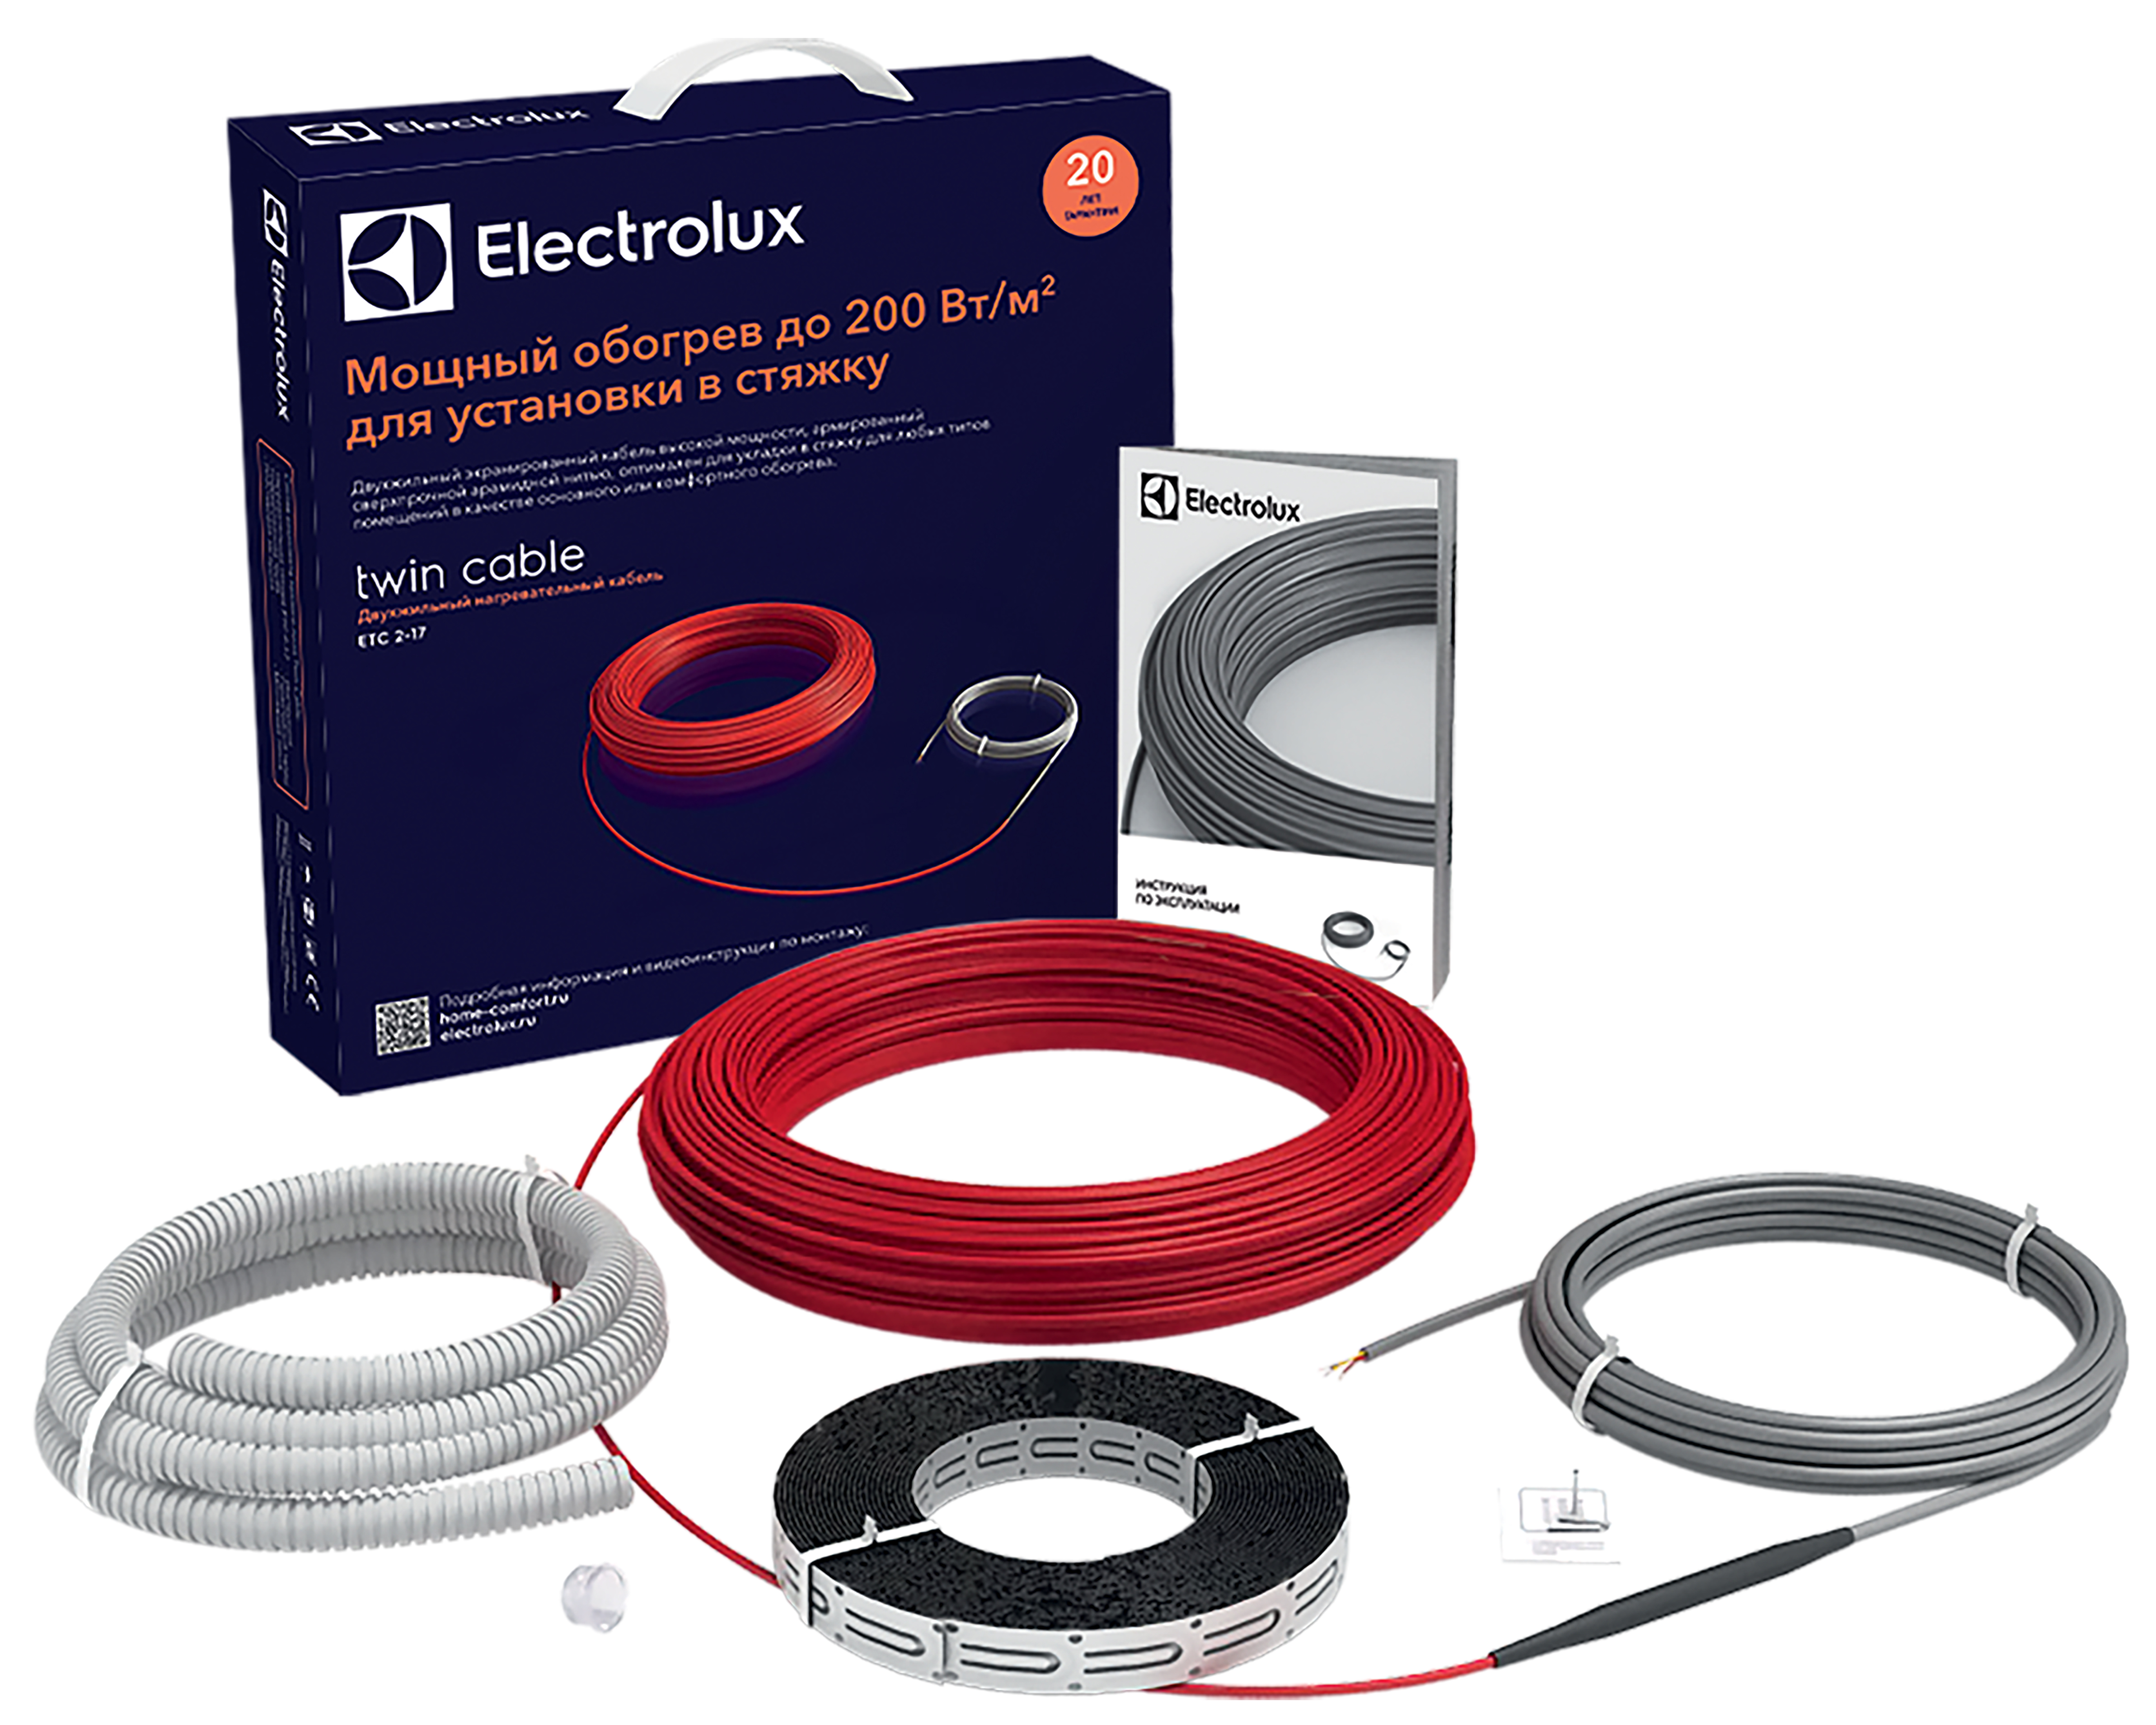 Теплый пол Electrolux под линолеум Electrolux Twin Cable ETC 2-17-300